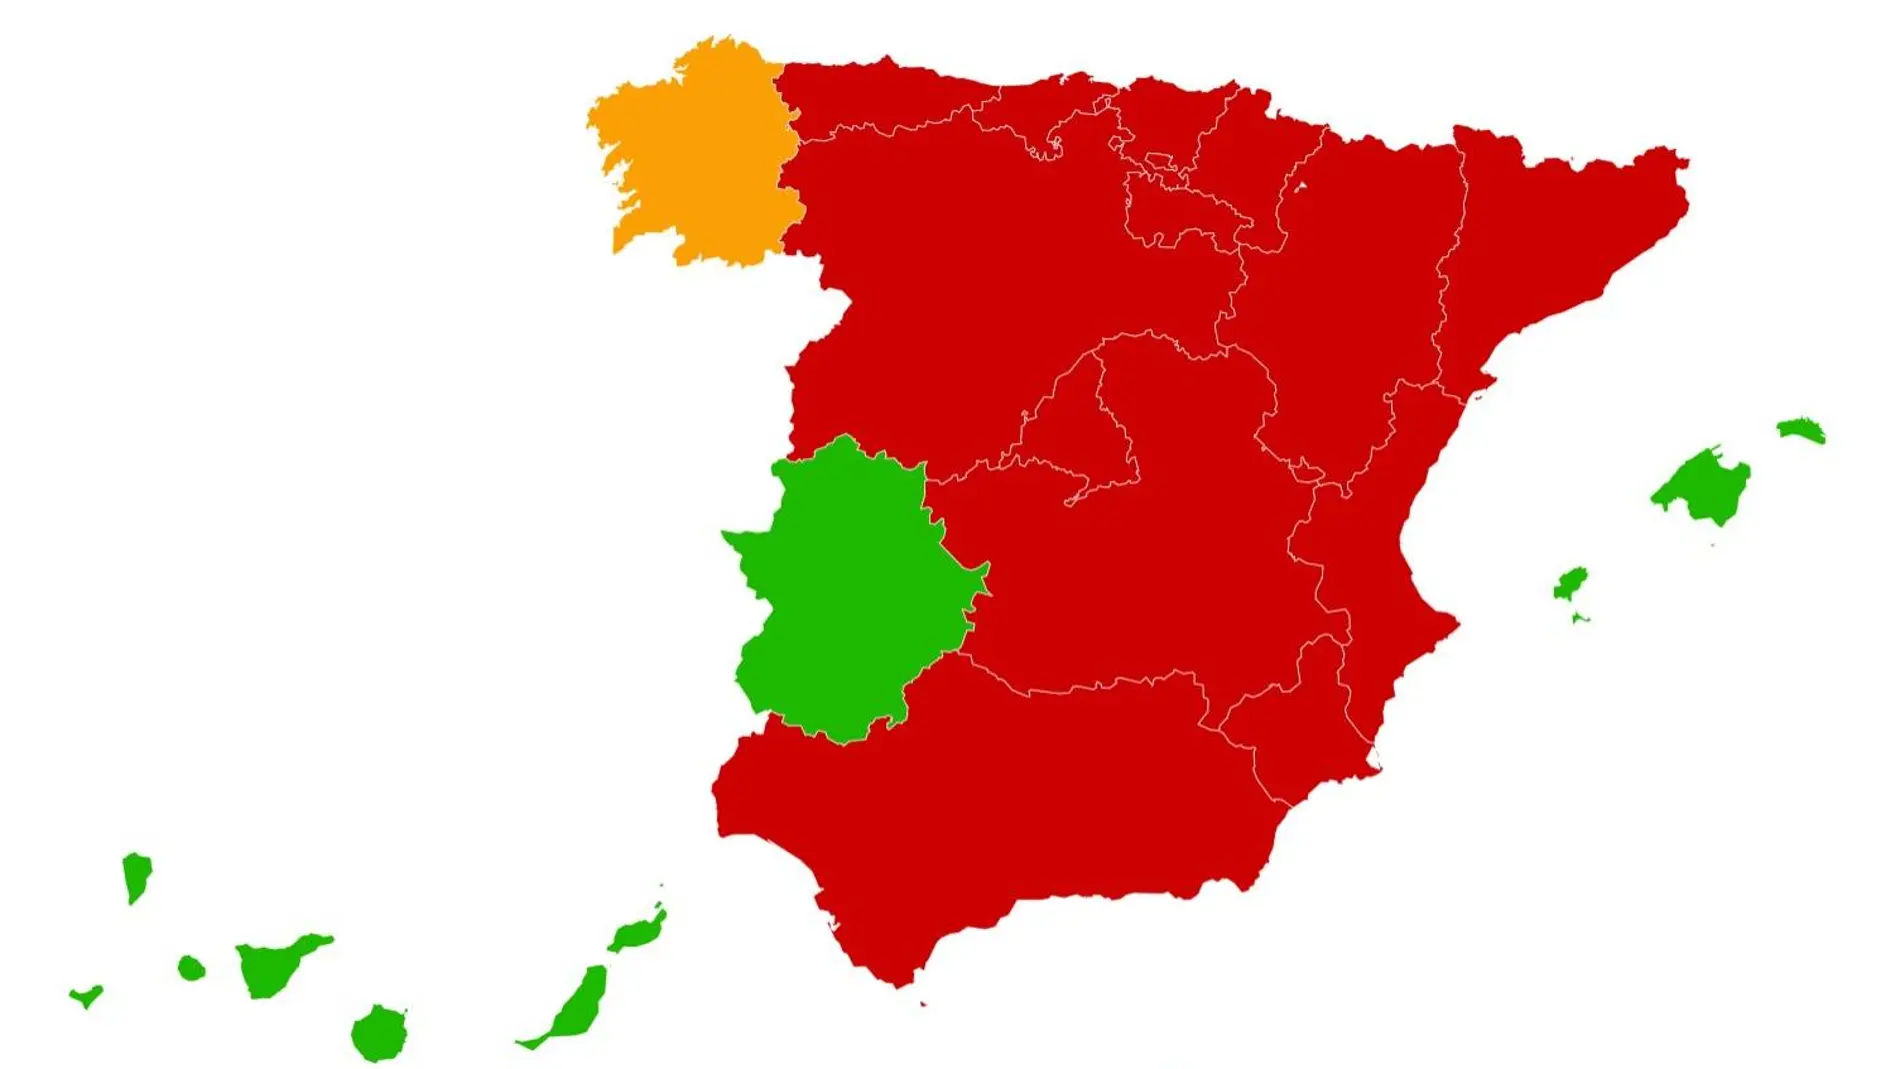 Restricciones perimetrales en casi toda España